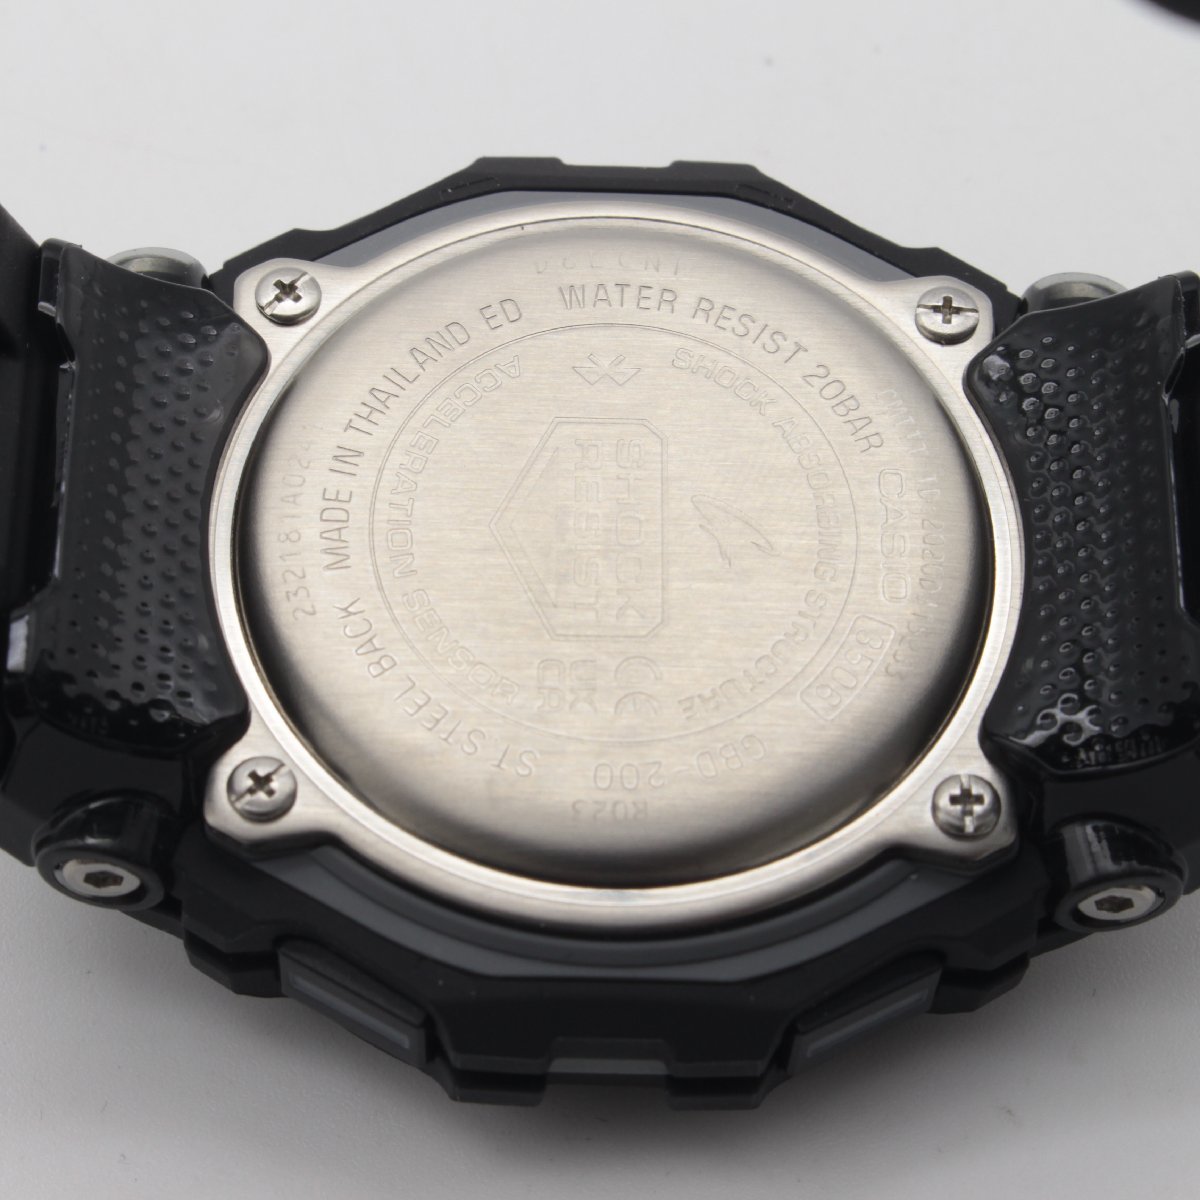 1669▲ CASIO 腕時計 G-SHOCK GBD-200-1JF 20気圧防水 耐衝撃性 モバイルリンク デジタル ランニングにオススメ メンズ ブラック【0122】_画像6